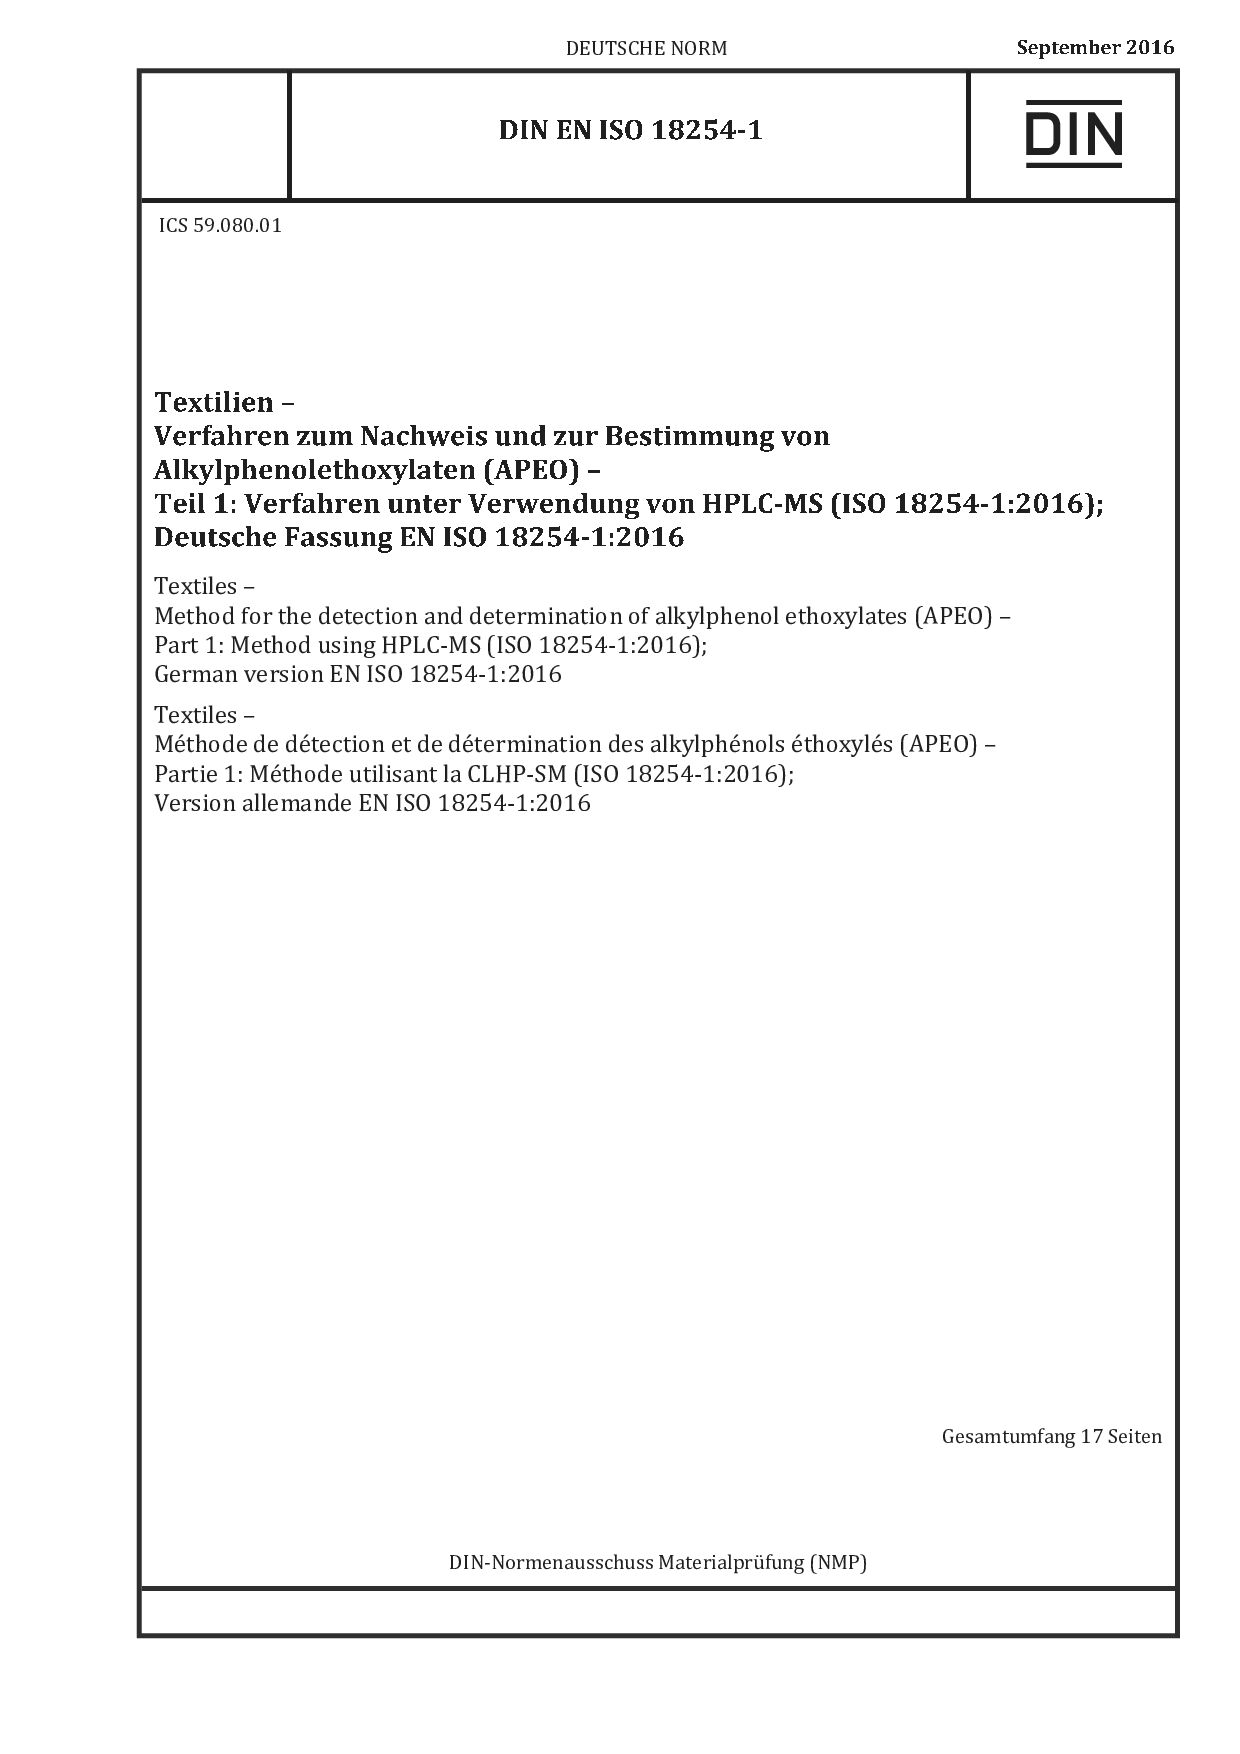 DIN EN ISO 18254-1:2016封面图